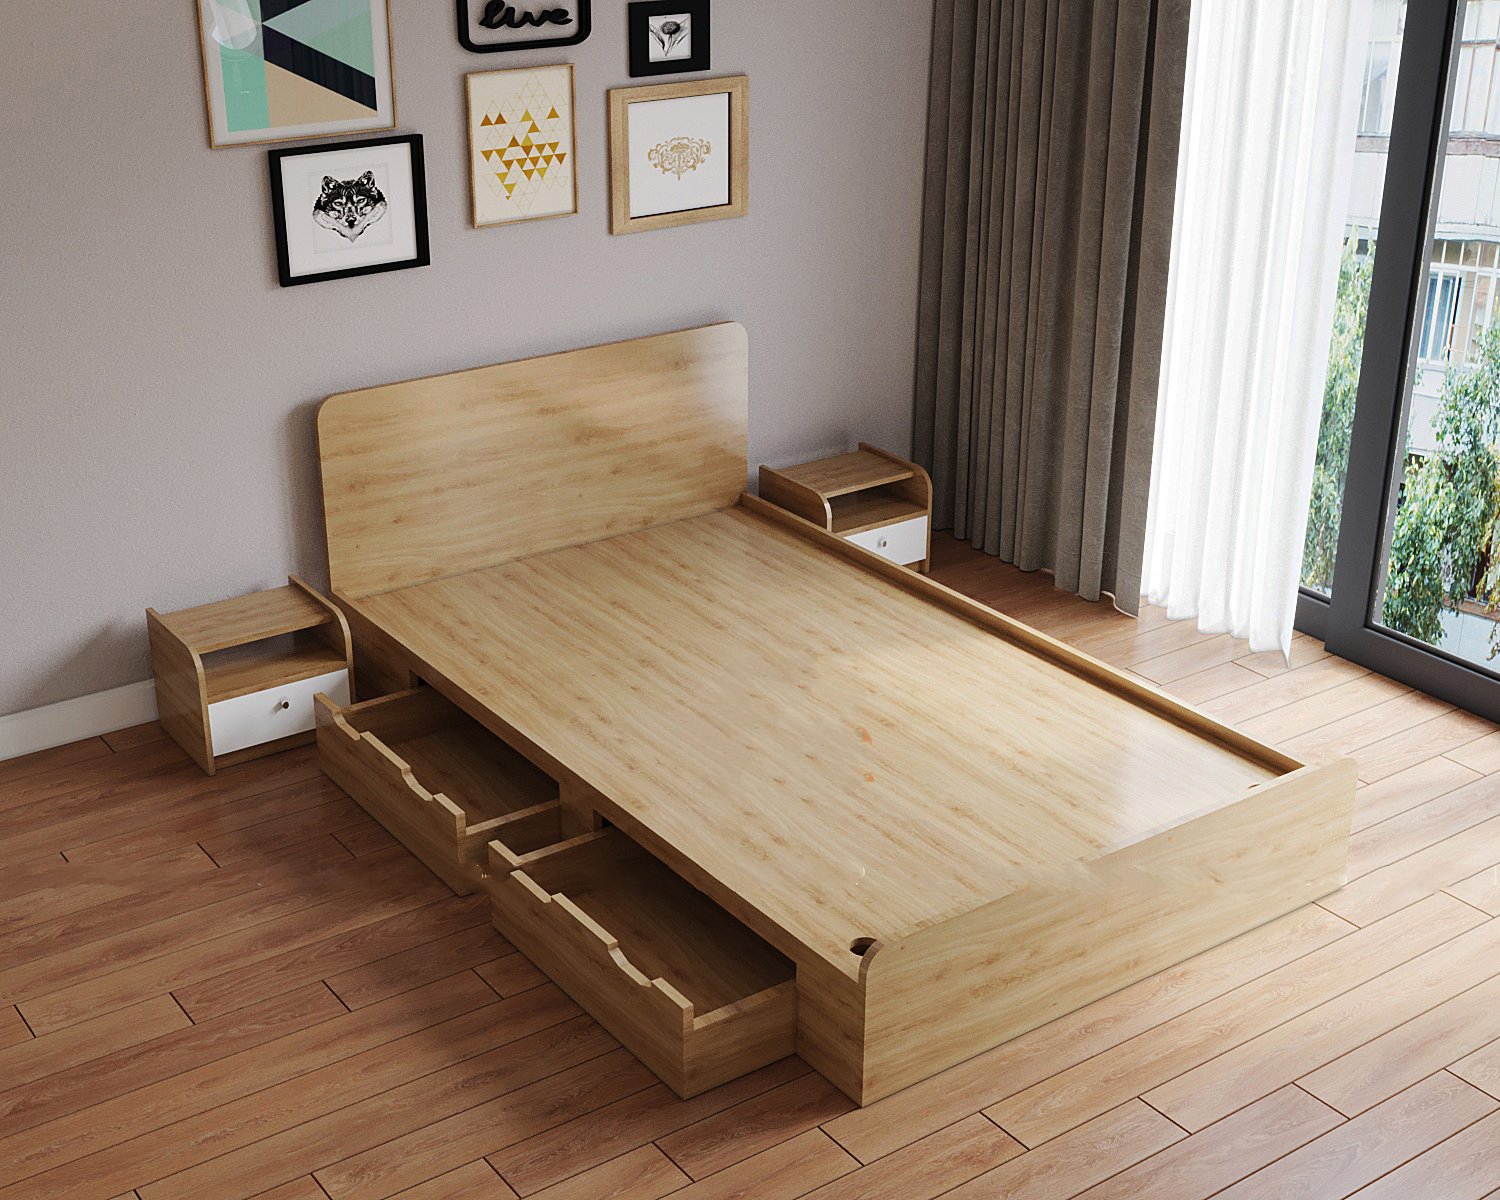 Thiết kế giường gỗ công nghiệp có hộc kéo